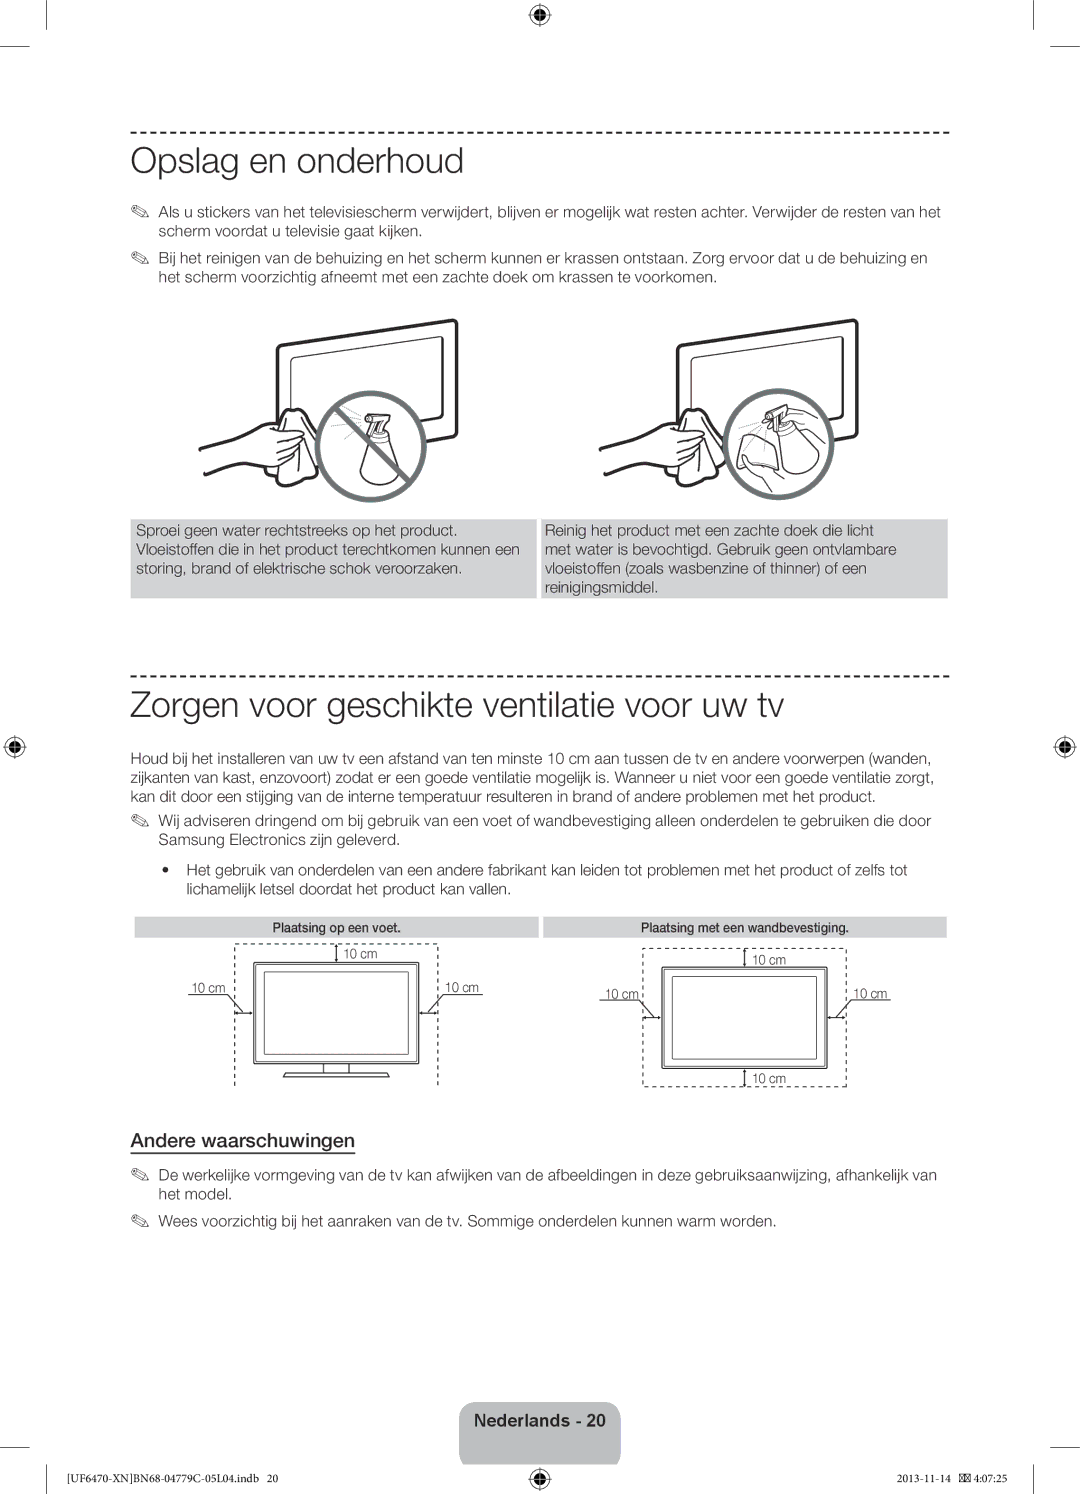 Samsung UE46F6500SSXZF manual Opslag en onderhoud, Zorgen voor geschikte ventilatie voor uw tv, Andere waarschuwingen 